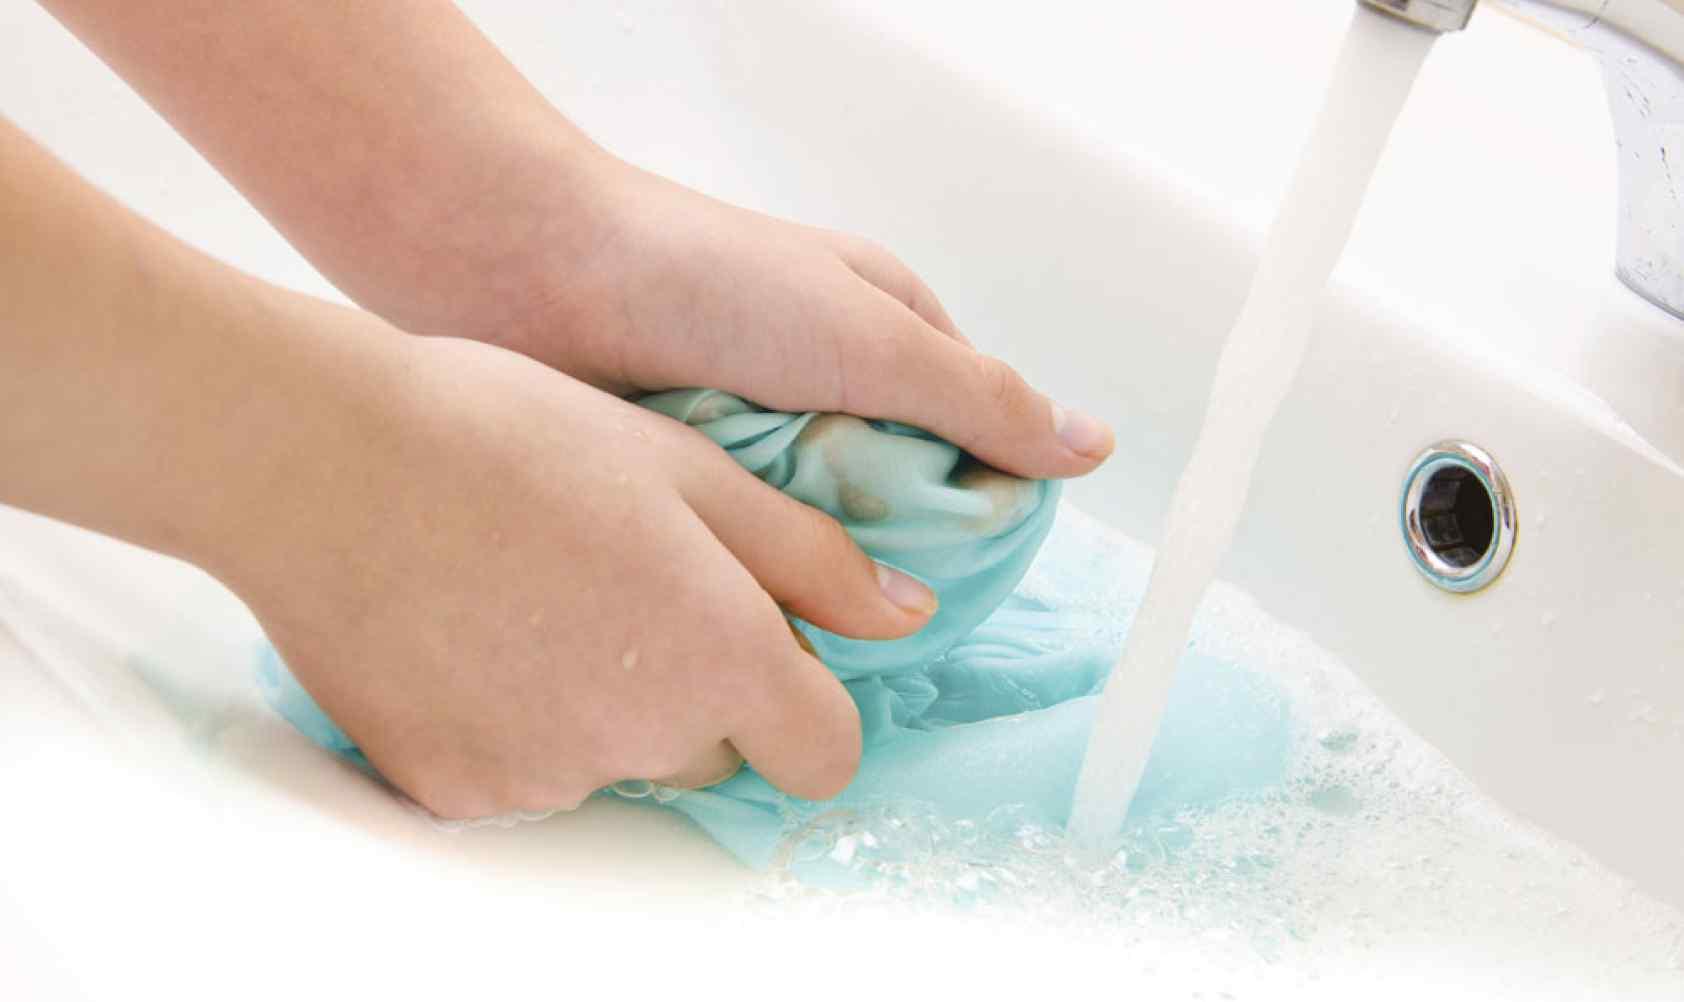 Ako prilikom pranja rublja ne koristite rukavice, dobro ih operite nakon što stavite rublje na pranje - Avaz